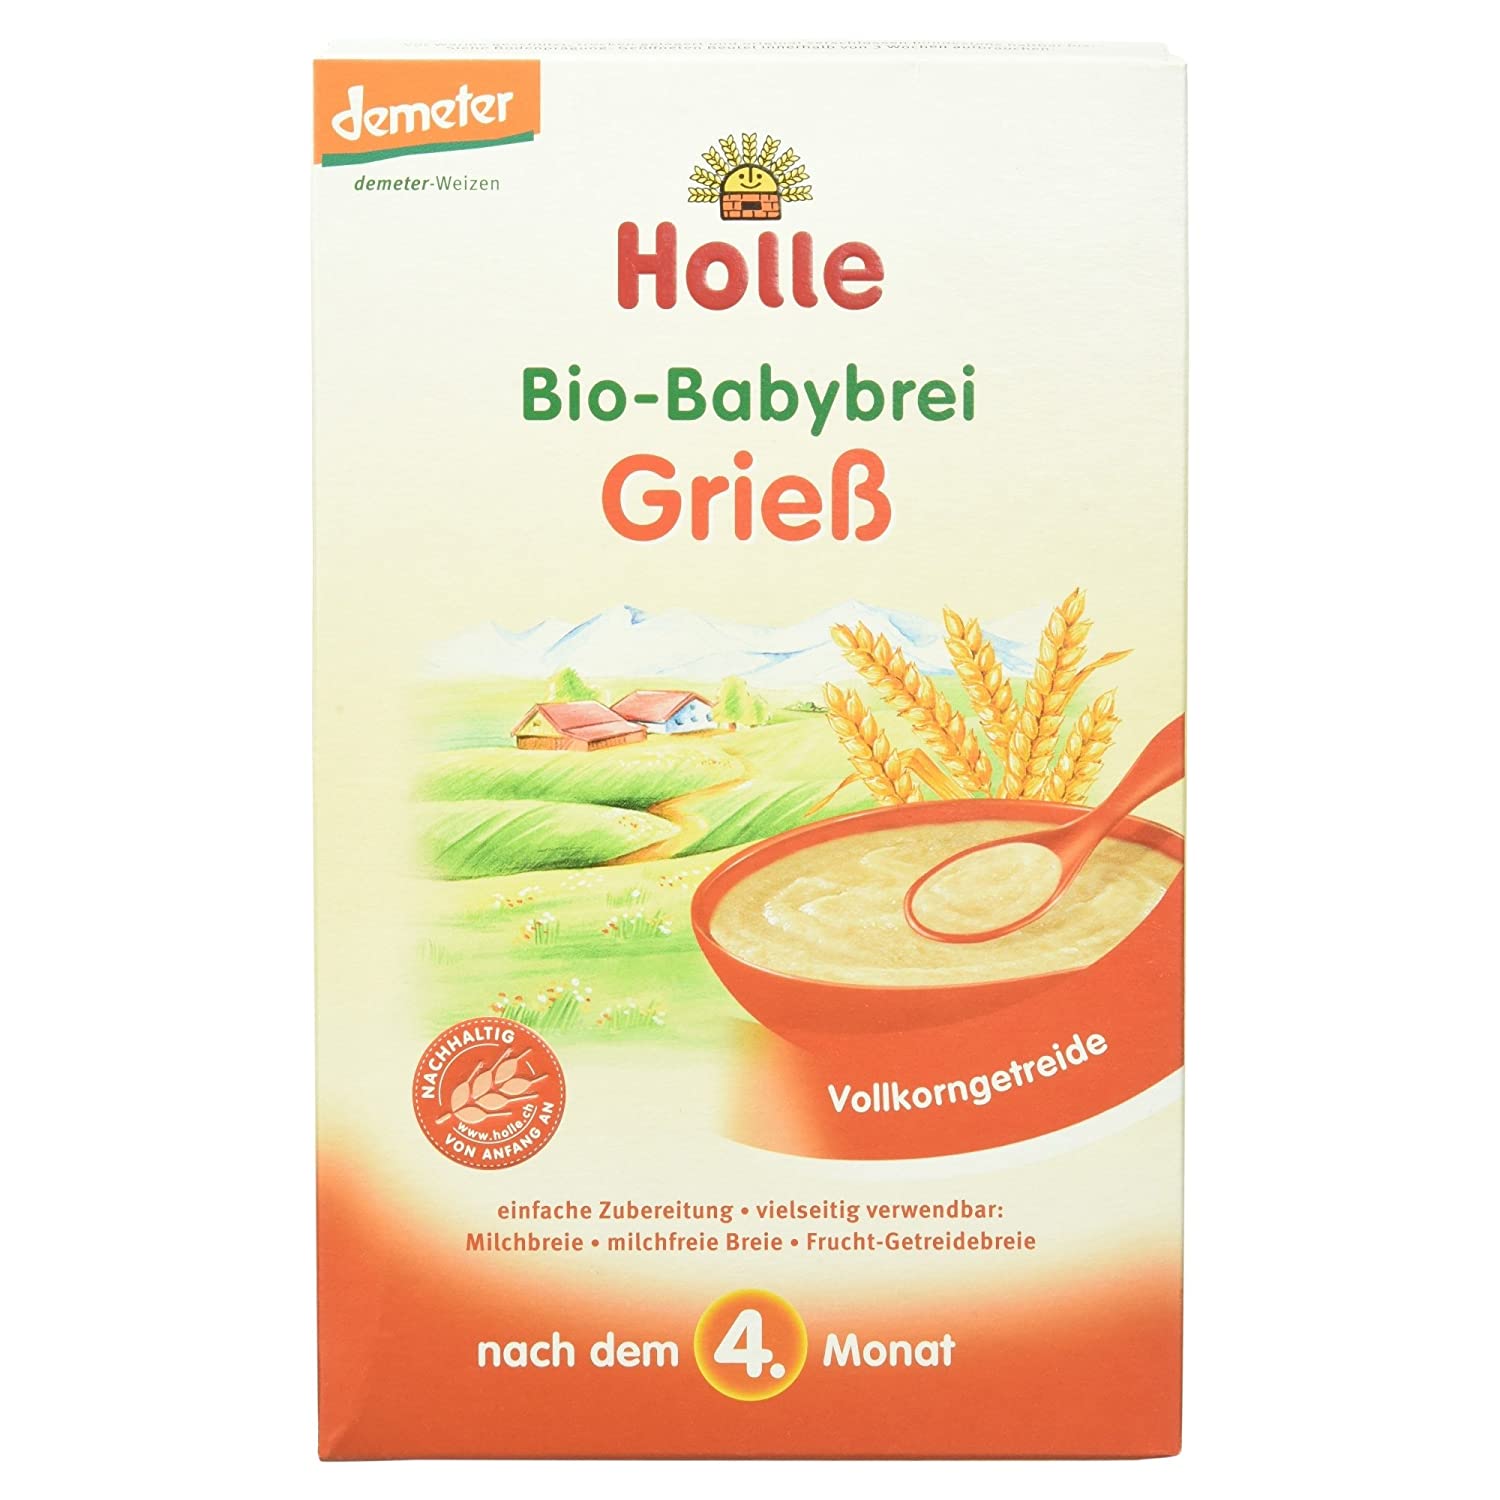 Holle Bio-Babybrei Griess (1 x 250 g)